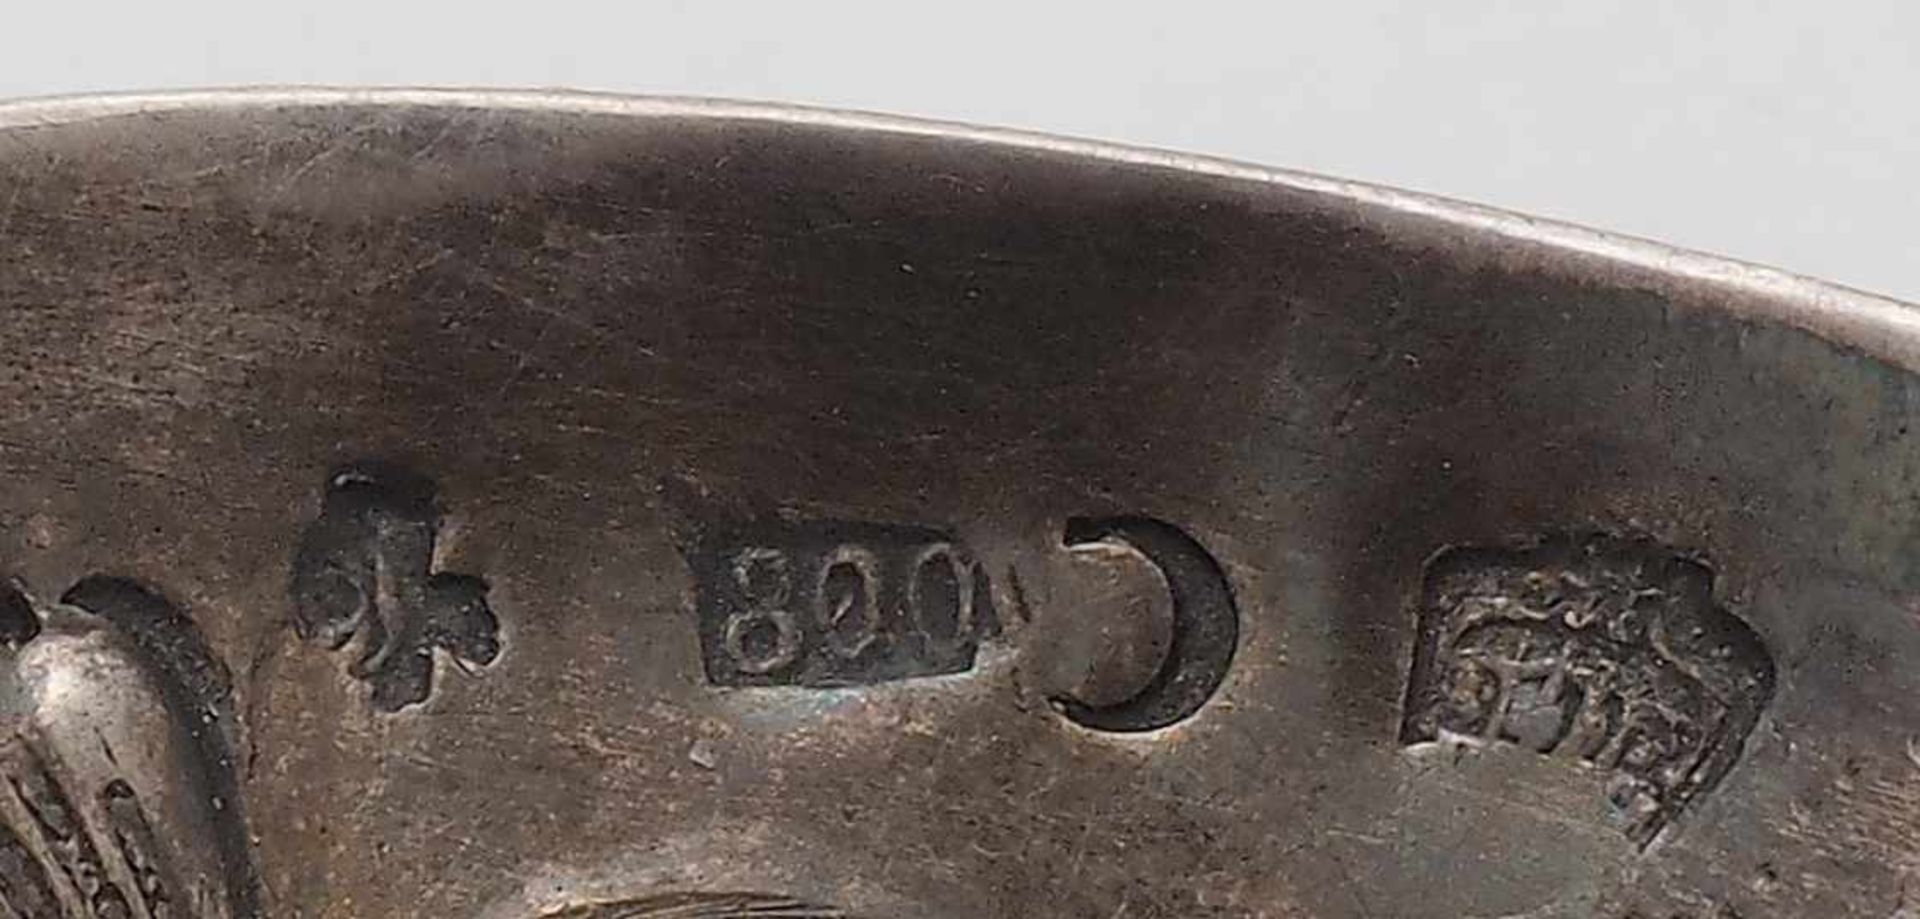 BranntweinschaleDeutsch 19.Jh. Silber 800. Ovale Schale mit zwei geschwungenen Handhaben und - Bild 4 aus 4